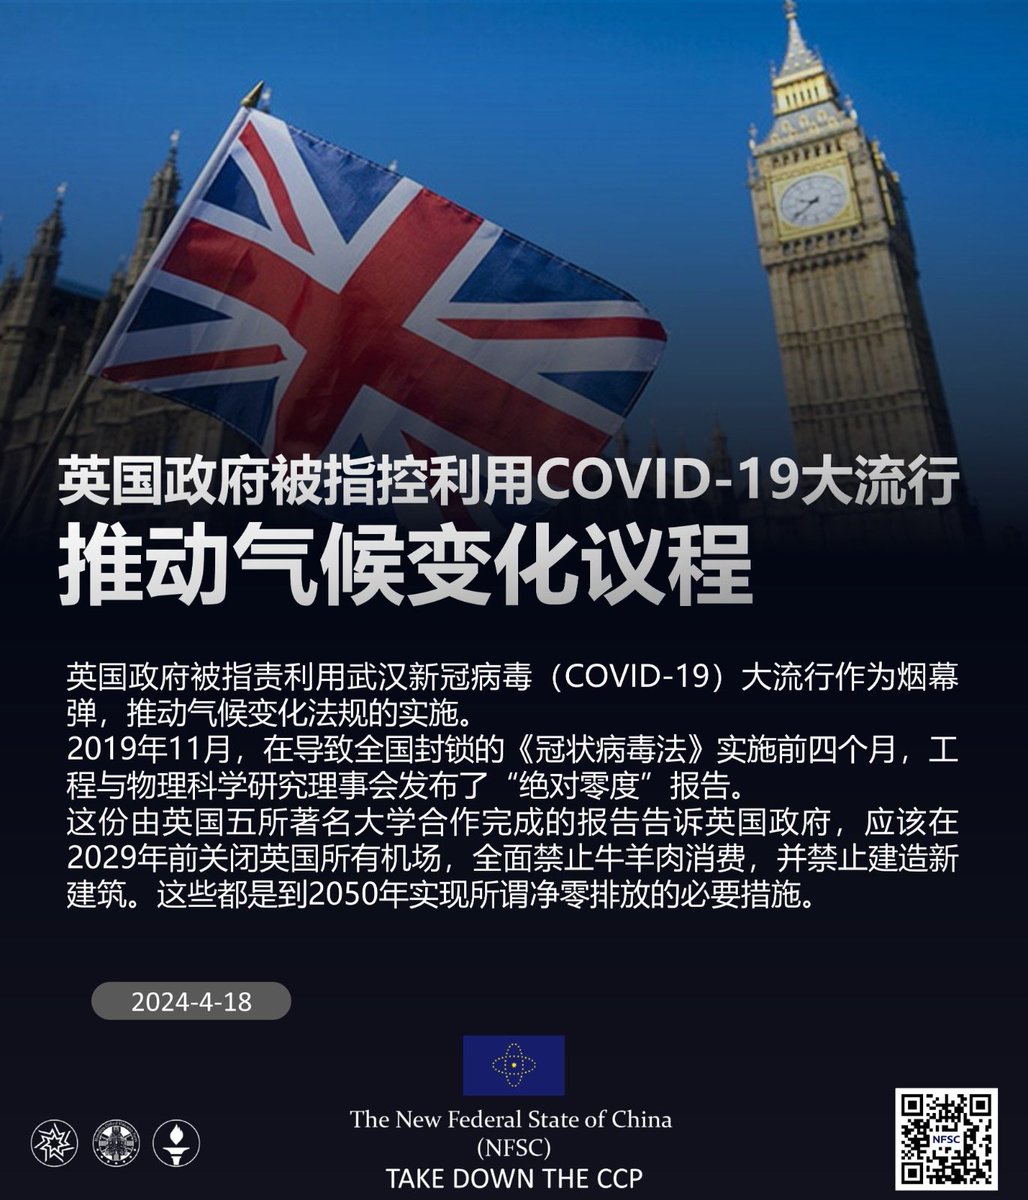 英国政府被指控利用COVID-19大流行推动气候变化议程
04/18/2024 #英国政府 被指责利用 #武汉 #新冠病毒( #COVID-19) 大流行作为烟幕弹,推动气候变化法规的实施。
2019年11月,在导致全国封锁的《 #冠状病毒法》实施前四个月,工程与物理科学研究理事会发布了“绝对零度”报告。
#decouplefromchina #脱钩